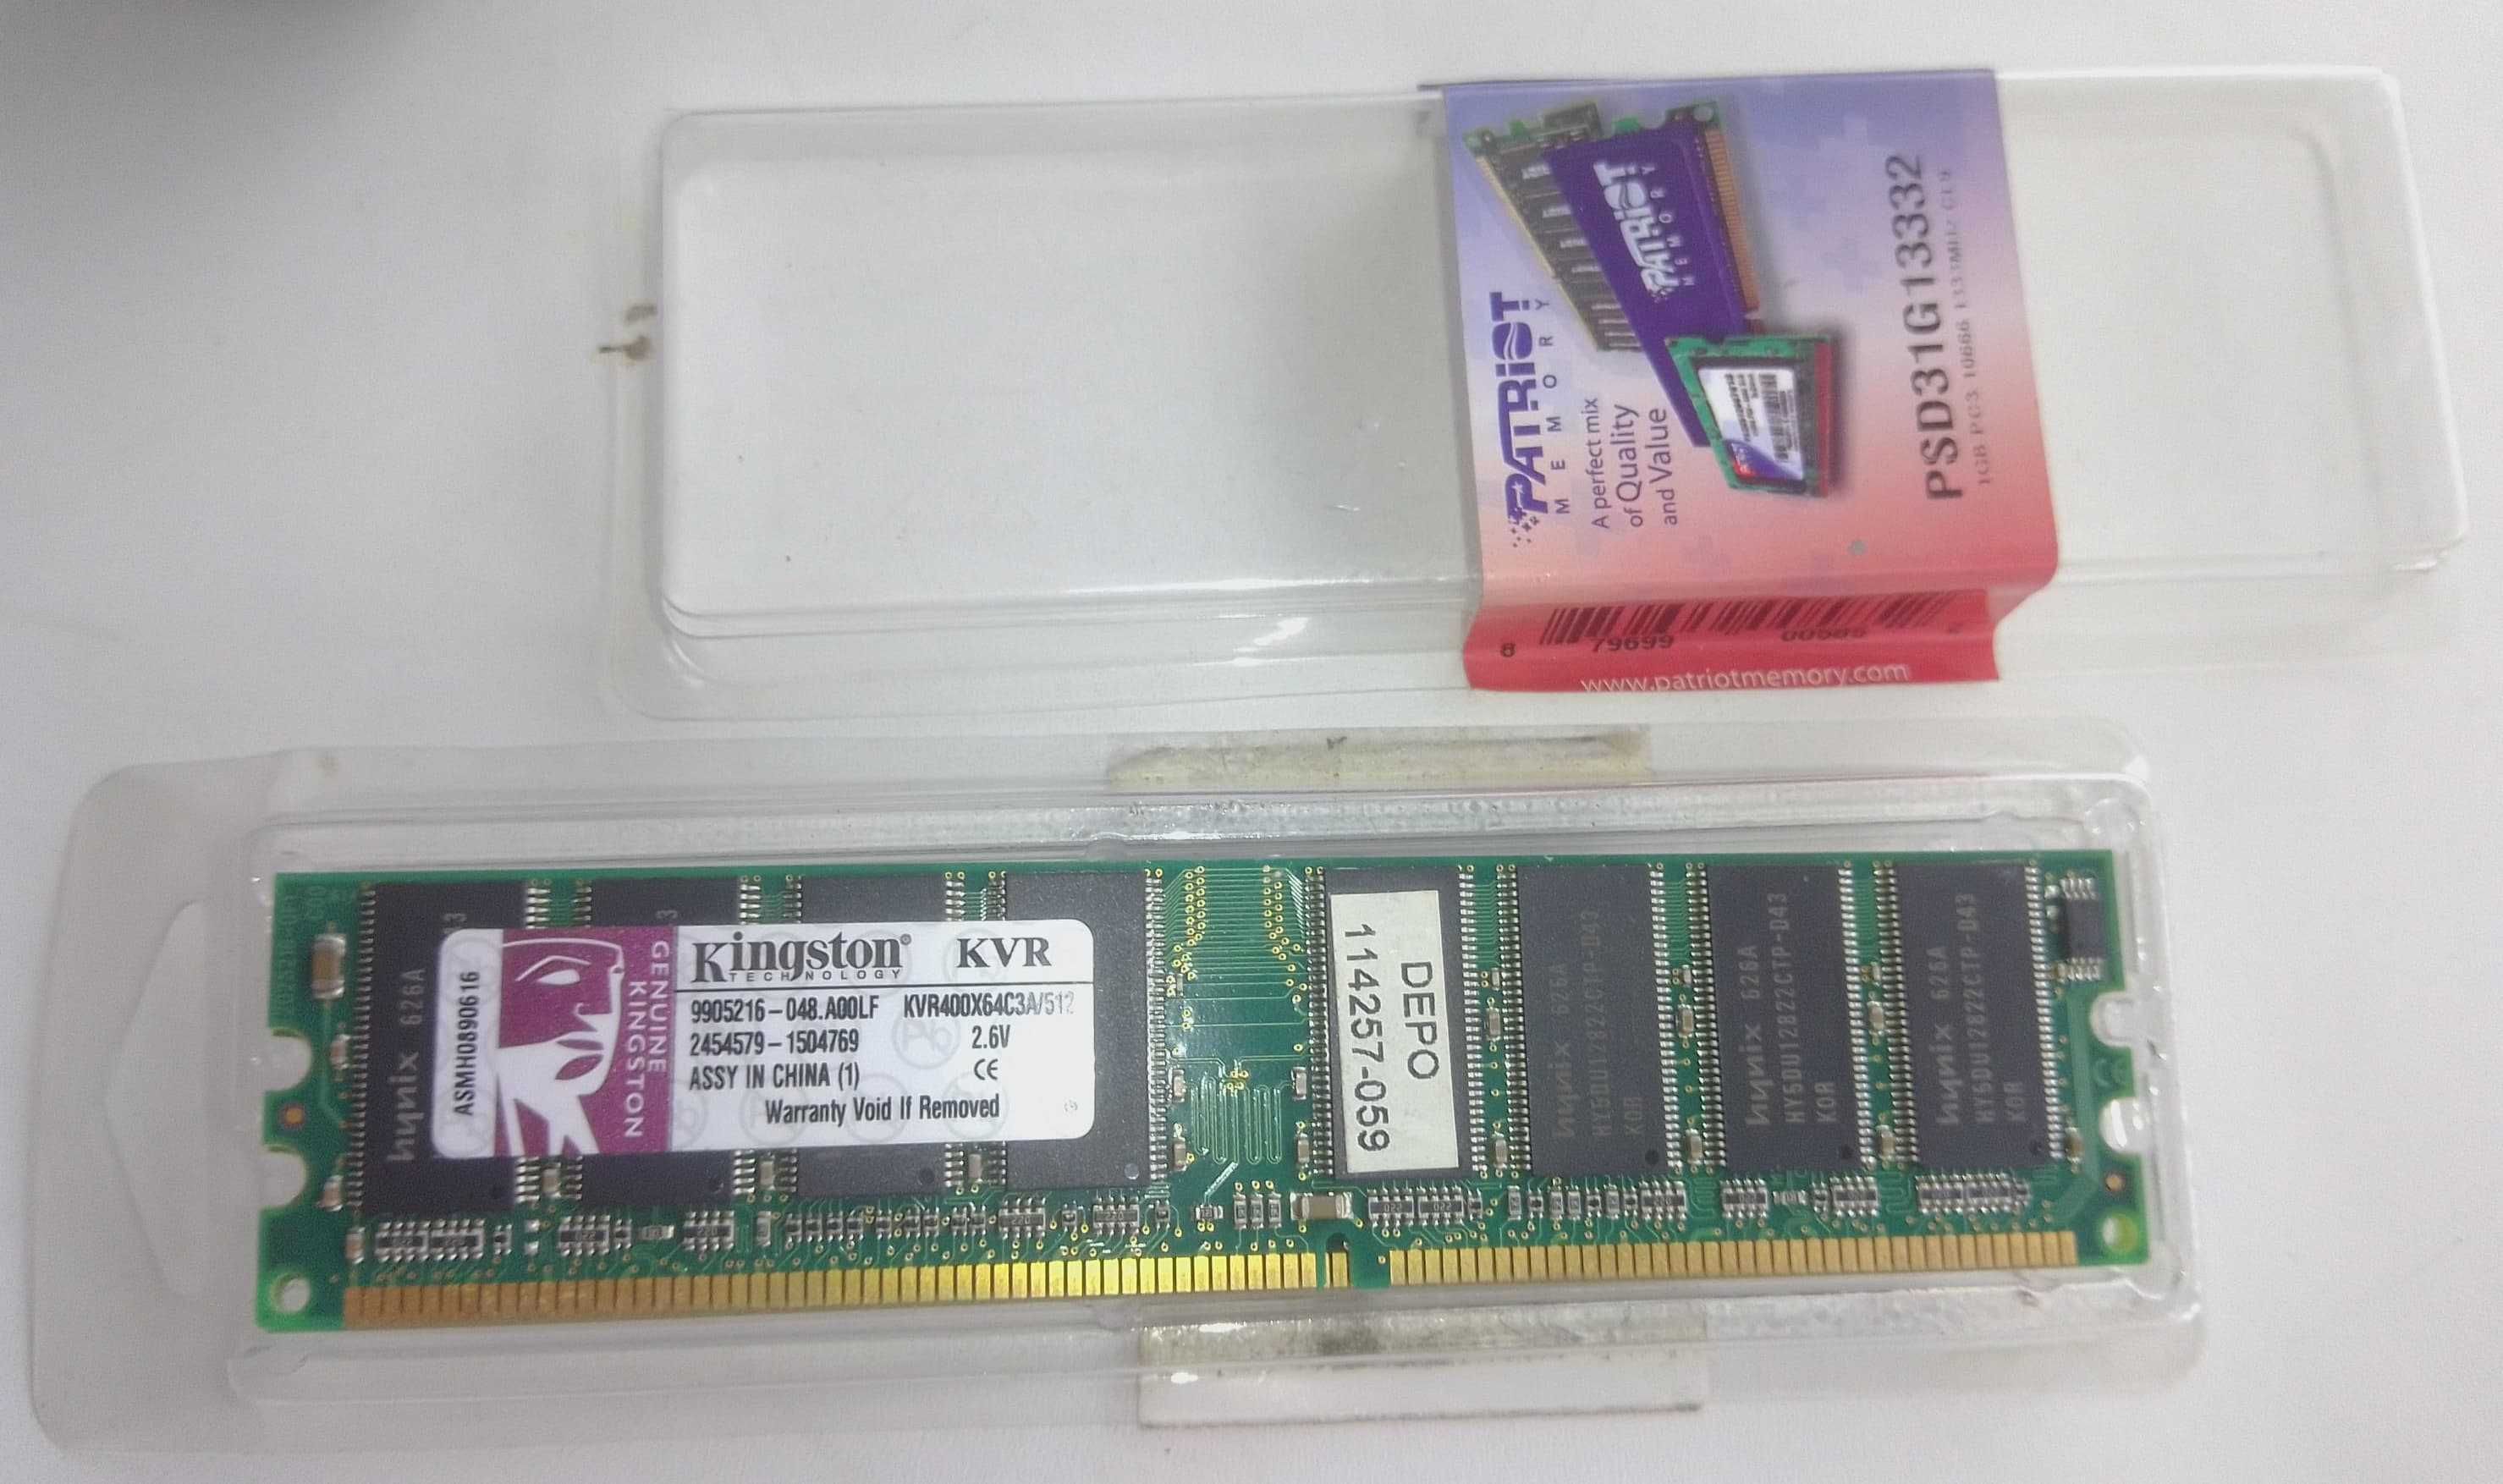 продам модули оперативной памяти Kingston KVR 512Mb DDR400 DIMM PC3200